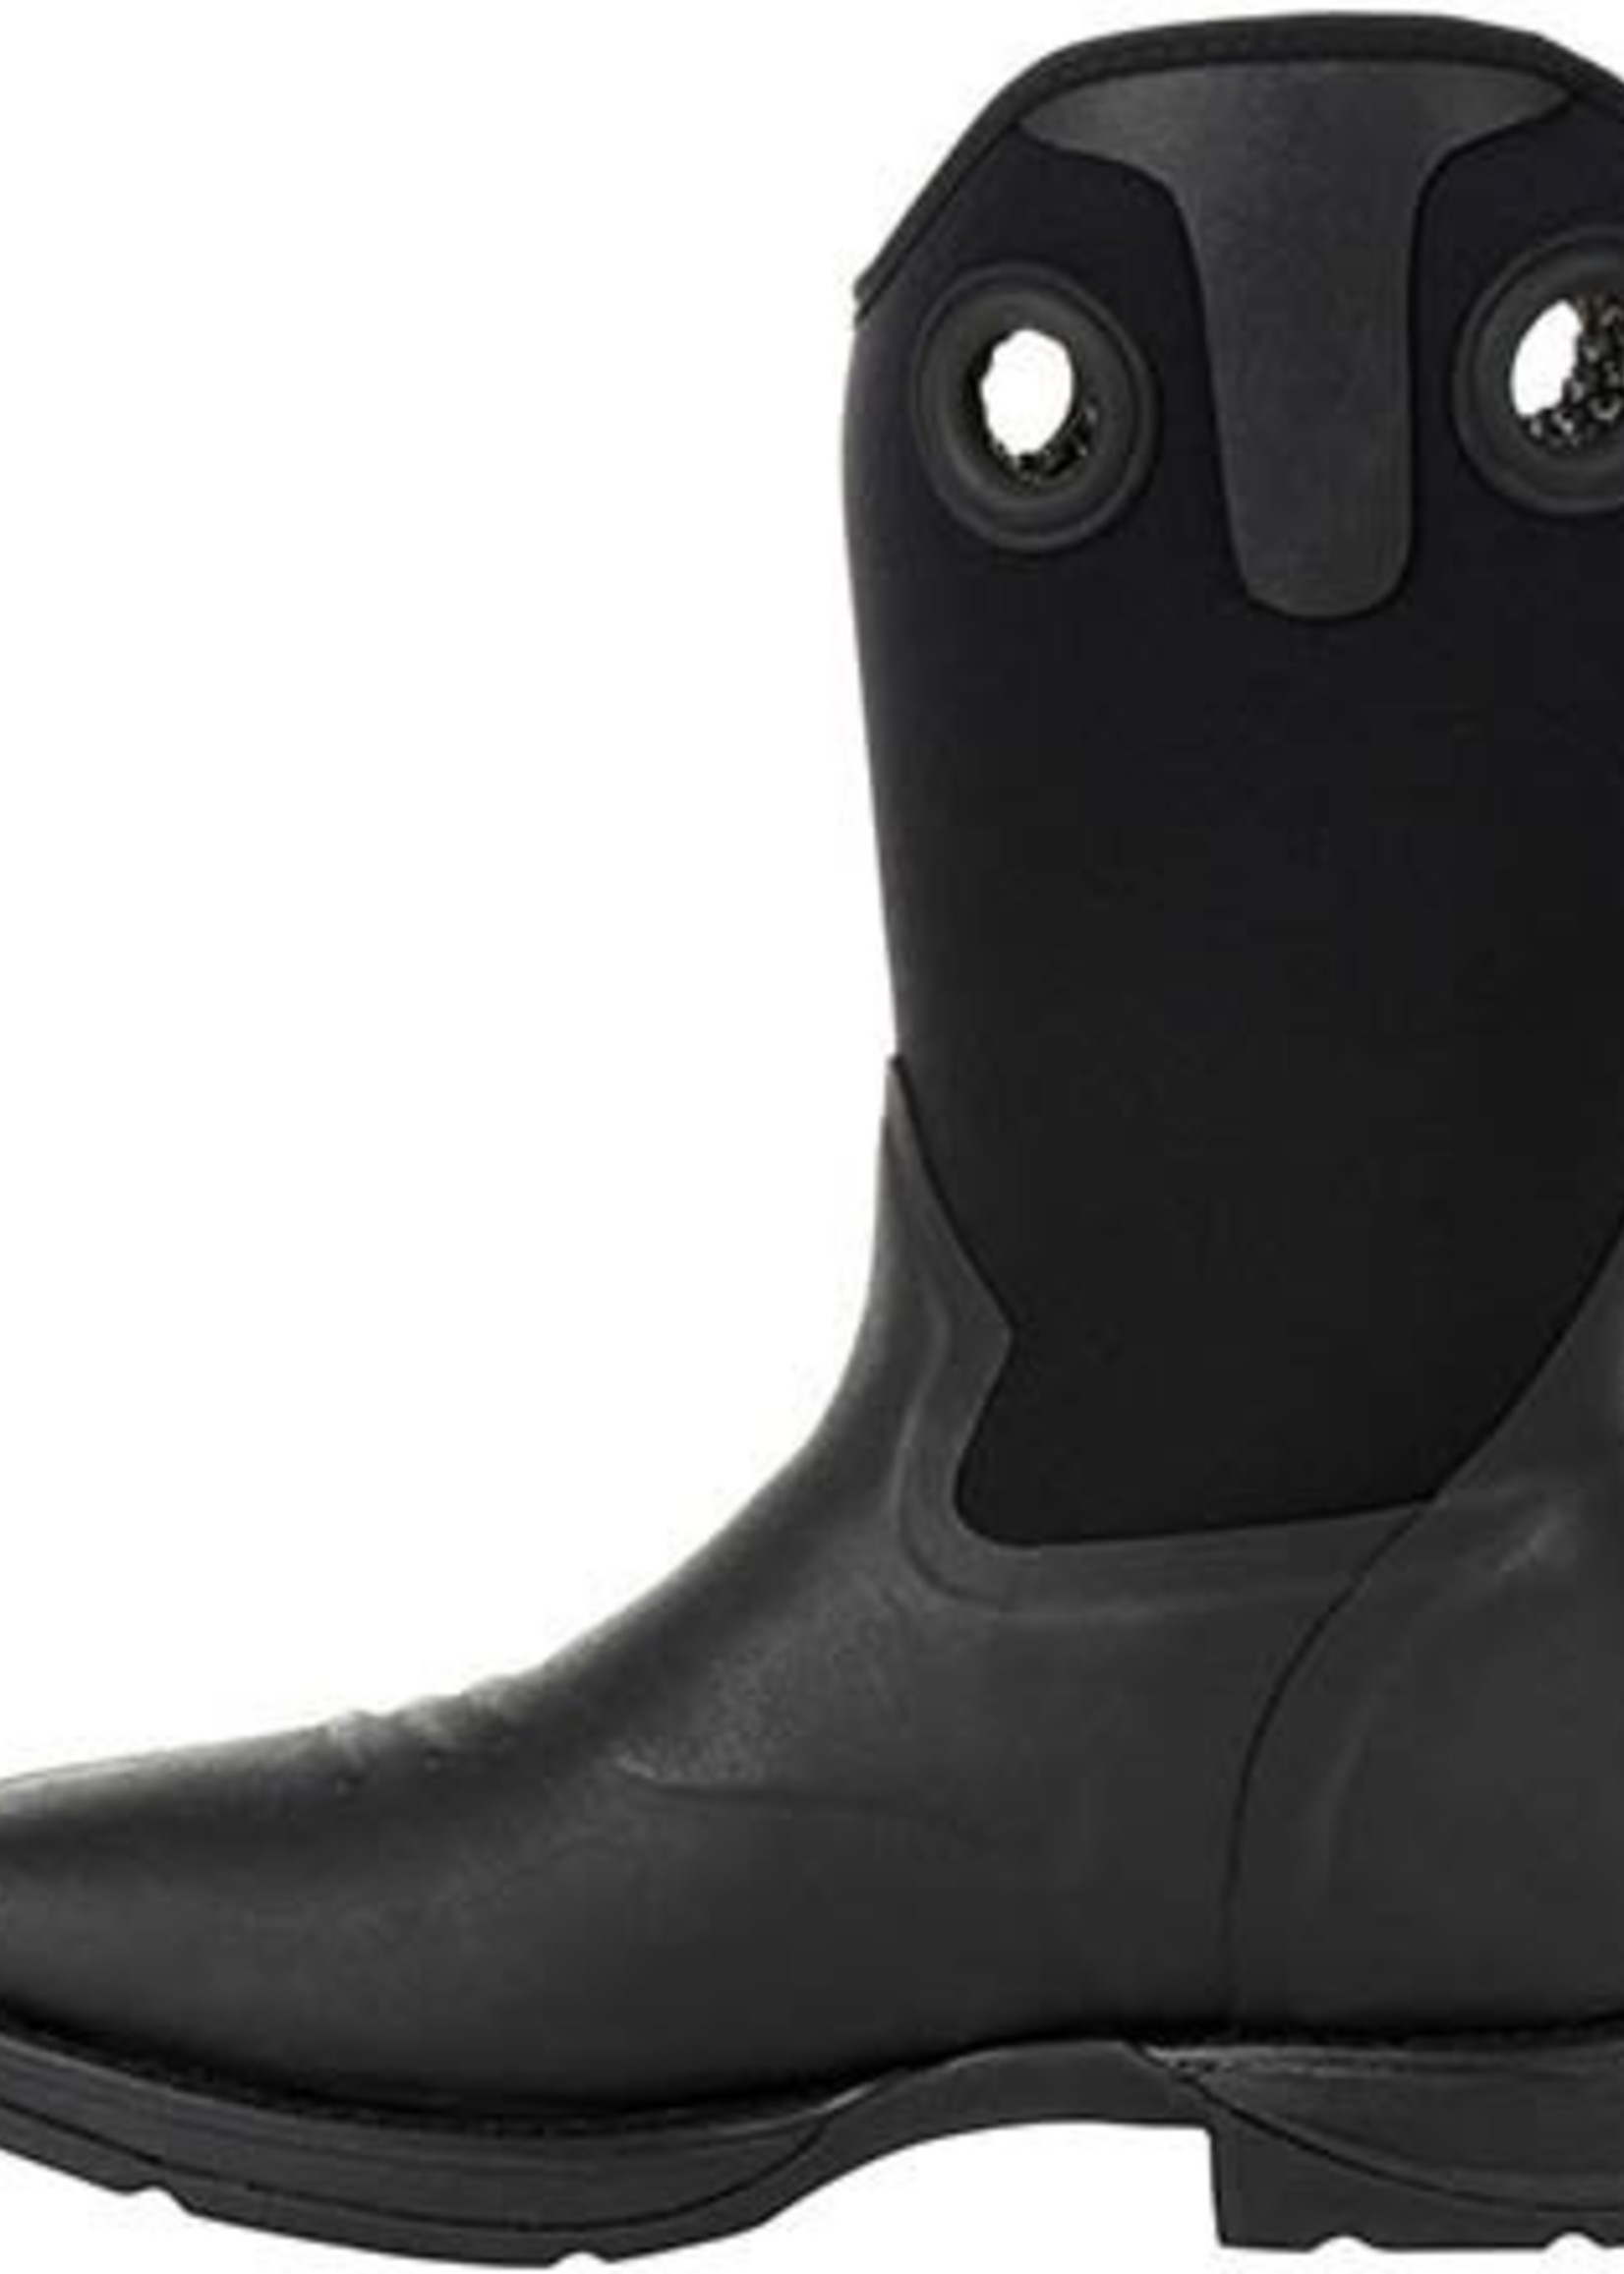 Boots-Men Durango DDB0209 Rebel Rancher Black Boot